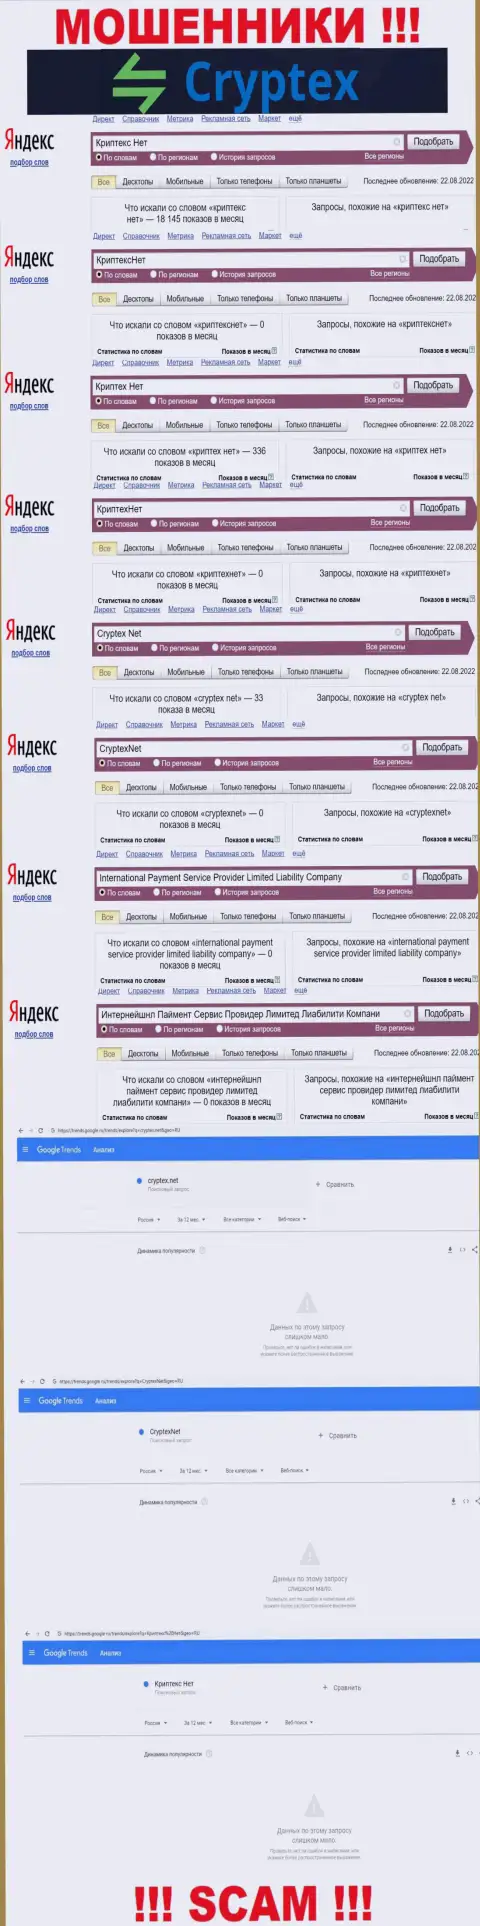 Скрин итогов запросов по жульнической конторе CryptexNet